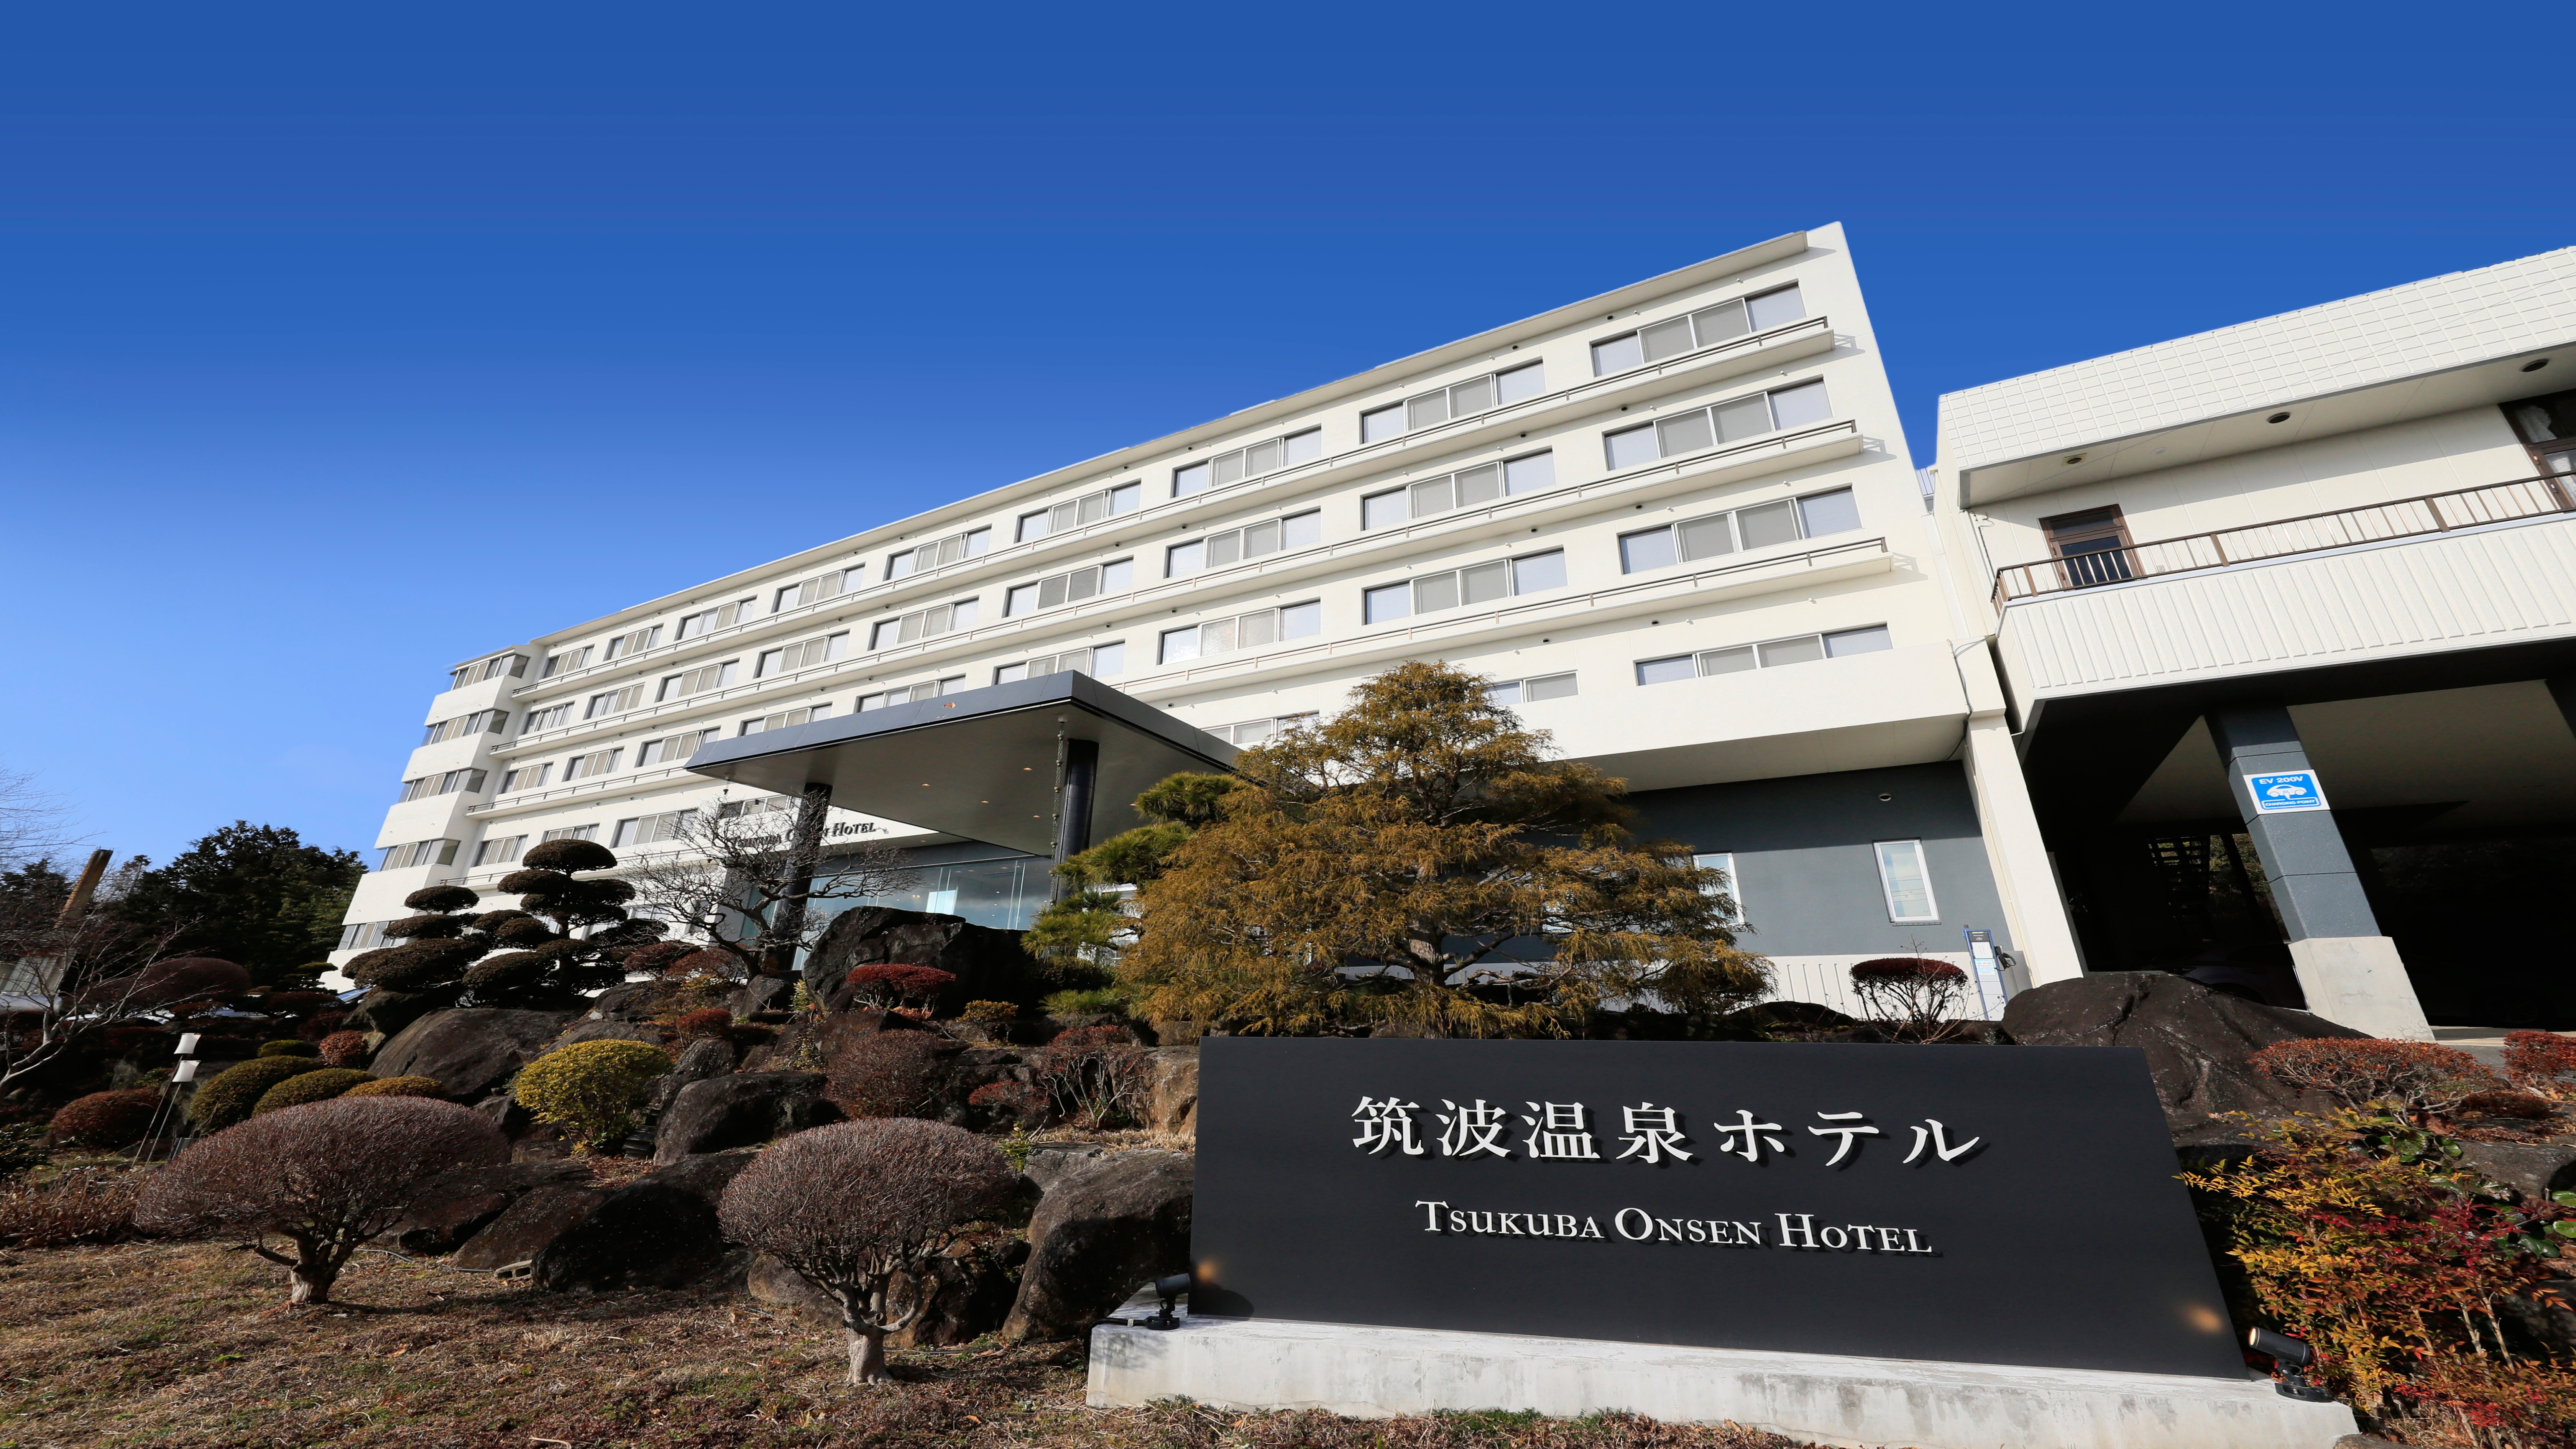 Tsukuba Onsen Hotel